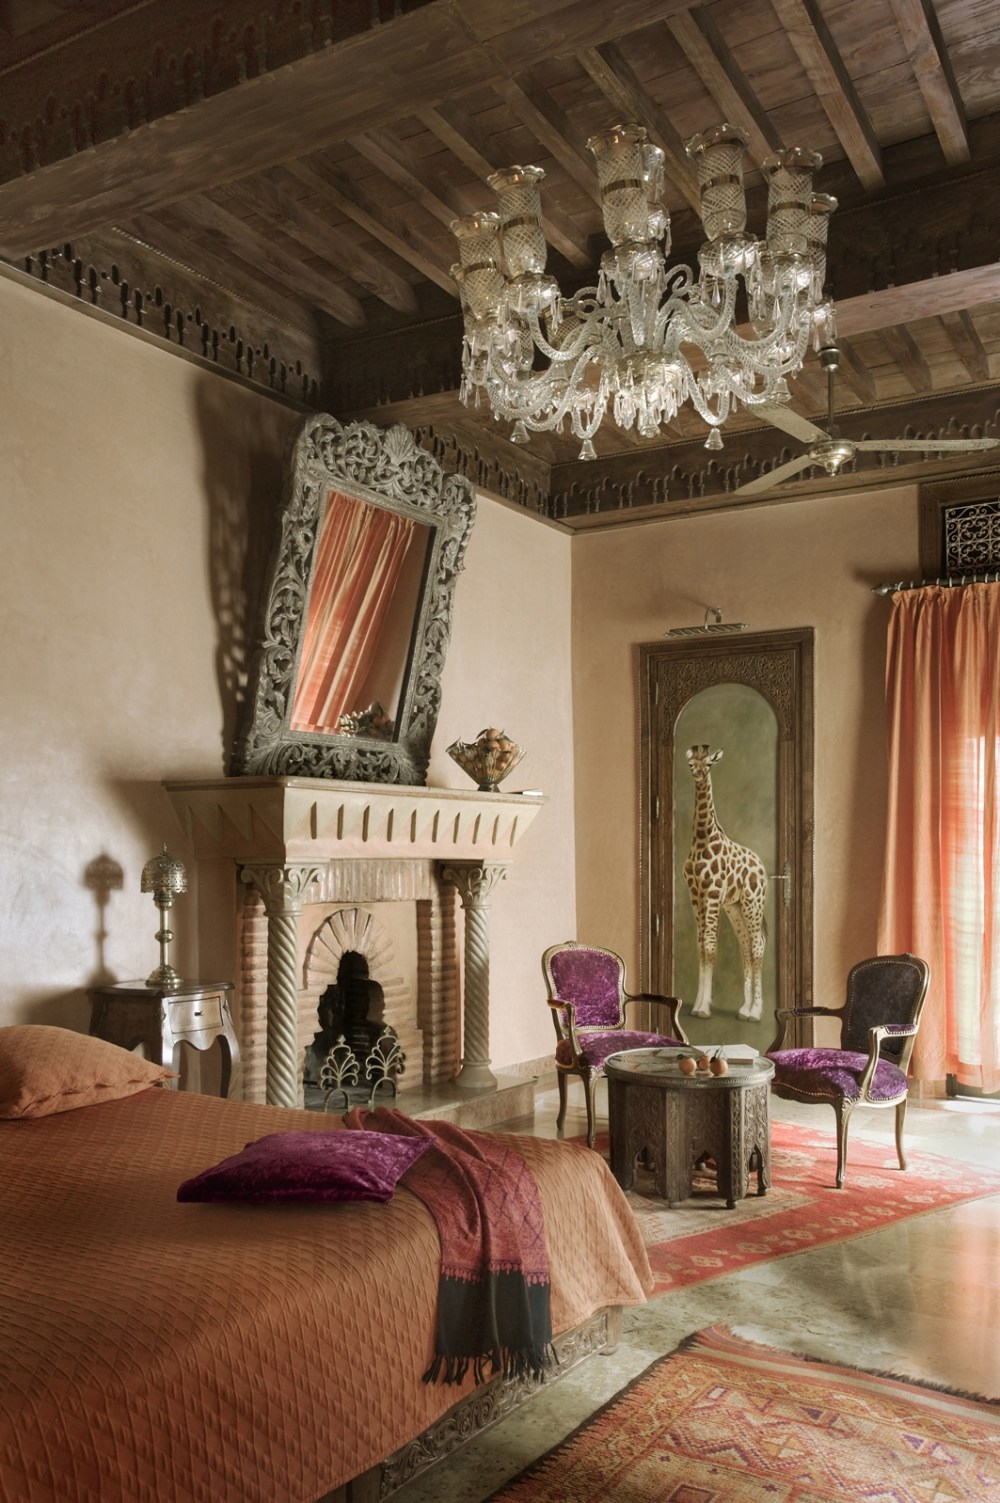 摩洛哥马拉喀什苏坦那酒店 La Sultana Marrakech_26153508-H1-Deluxe Junior Suite.jpg